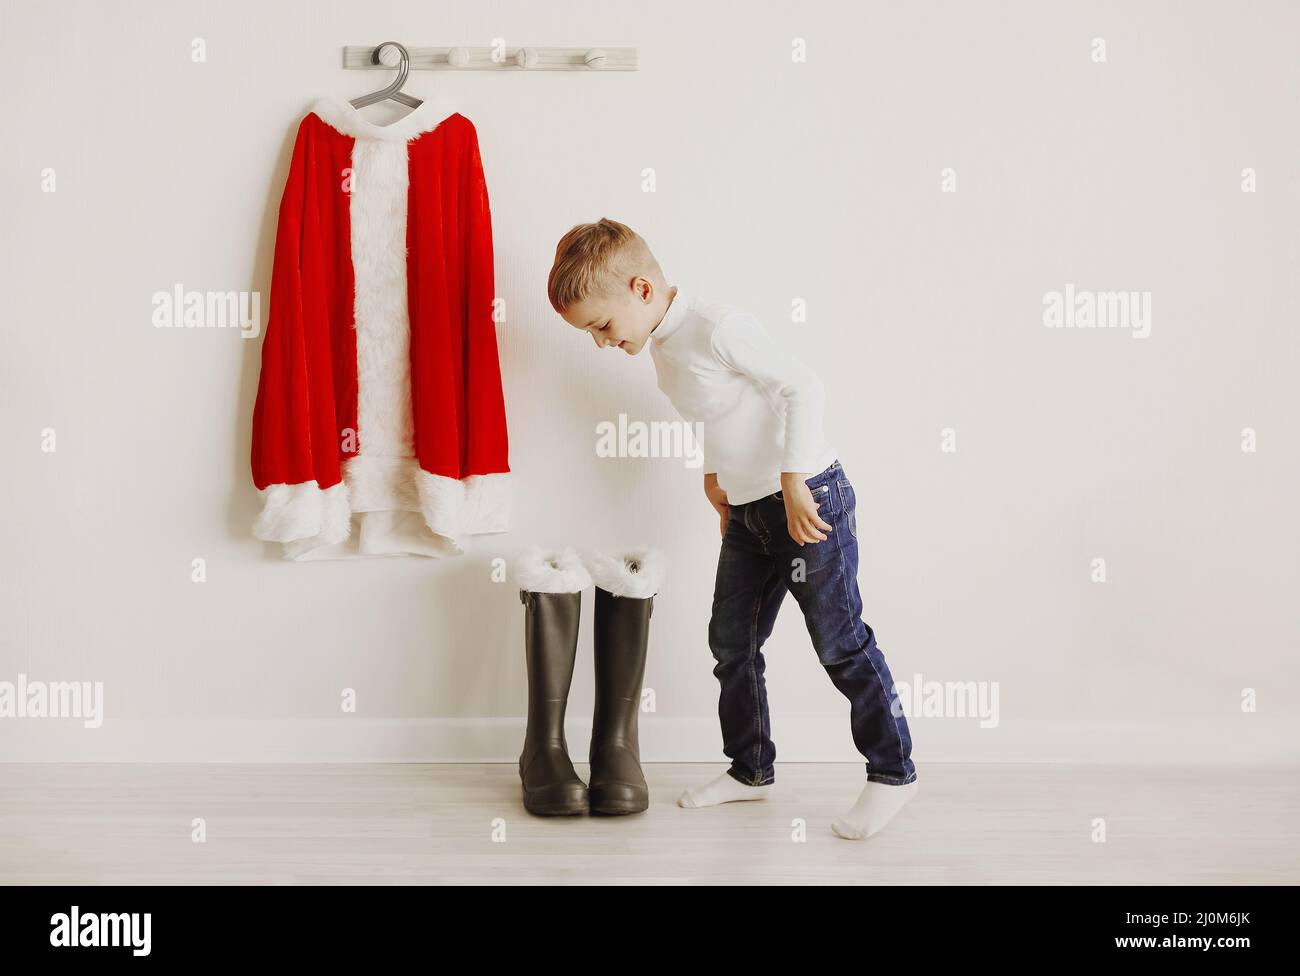 Weihnachtsmann Kostüm hängt an der Holzwand in der Nähe von Schuhen im hellen Raum Stockfoto